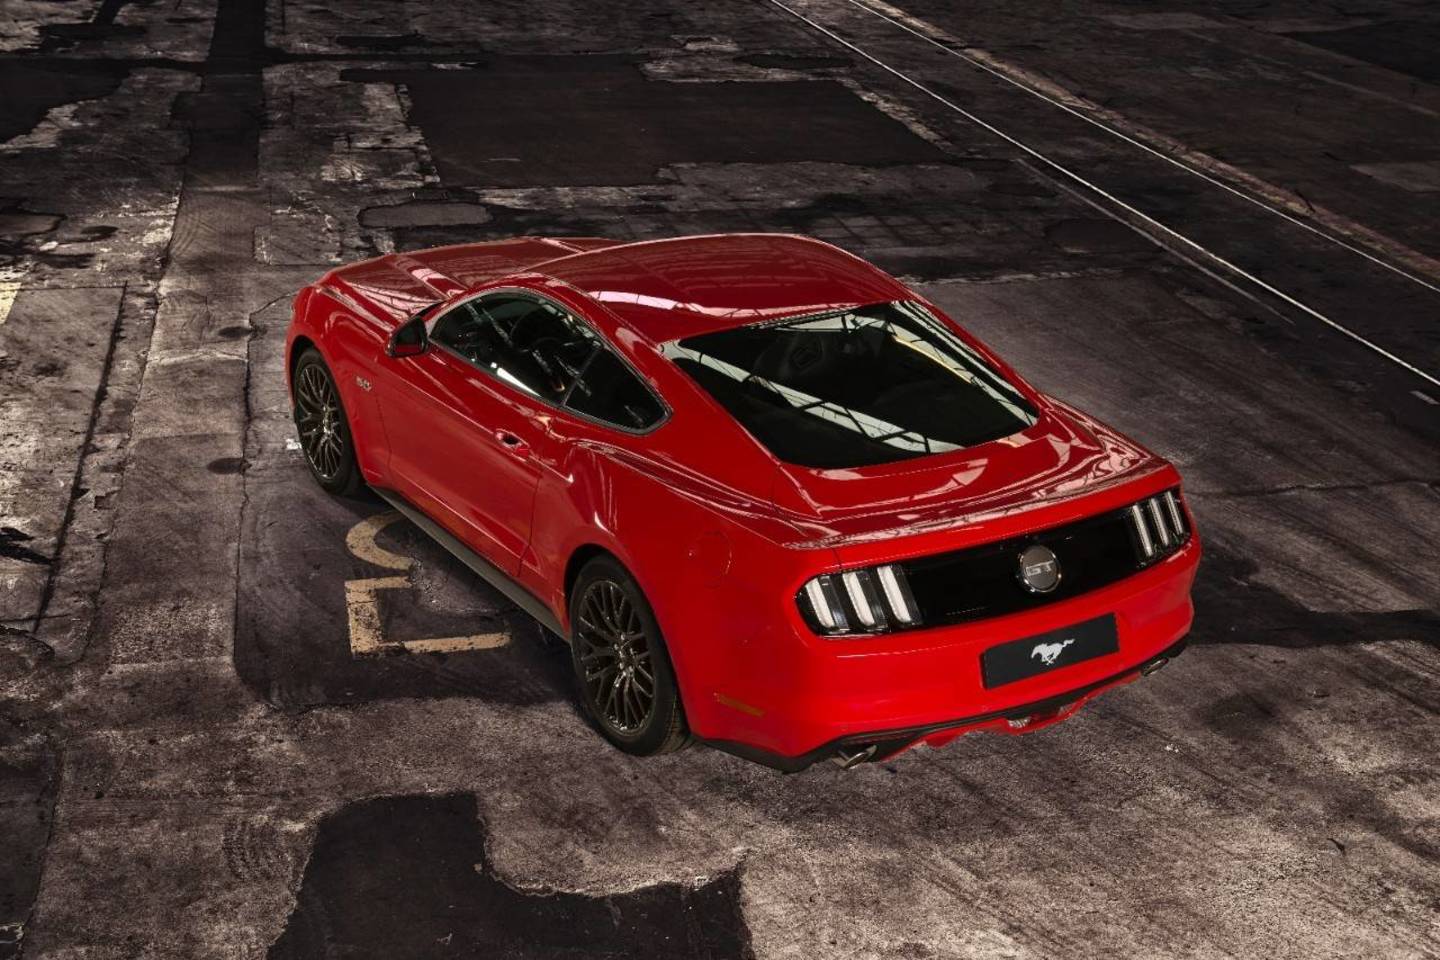 Europiečiams gražiausias raudonas „Mustang“, o dėl variklio nuomonės išsiskyrė.<br>Gamintojo nuotr.